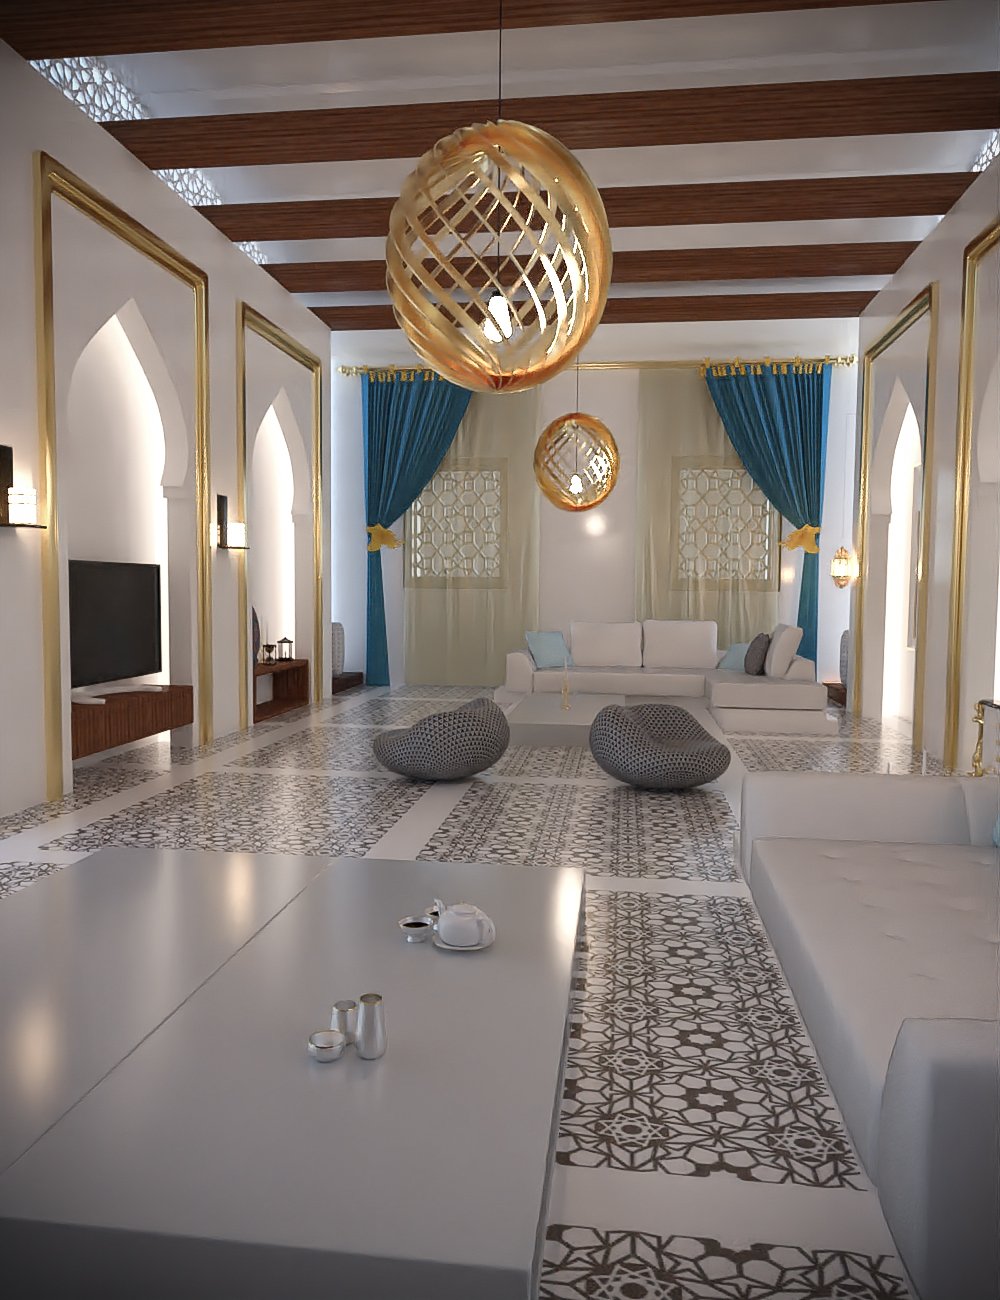 Arabic Anteroom by: Tesla3dCorp, 3D Models by Daz 3D